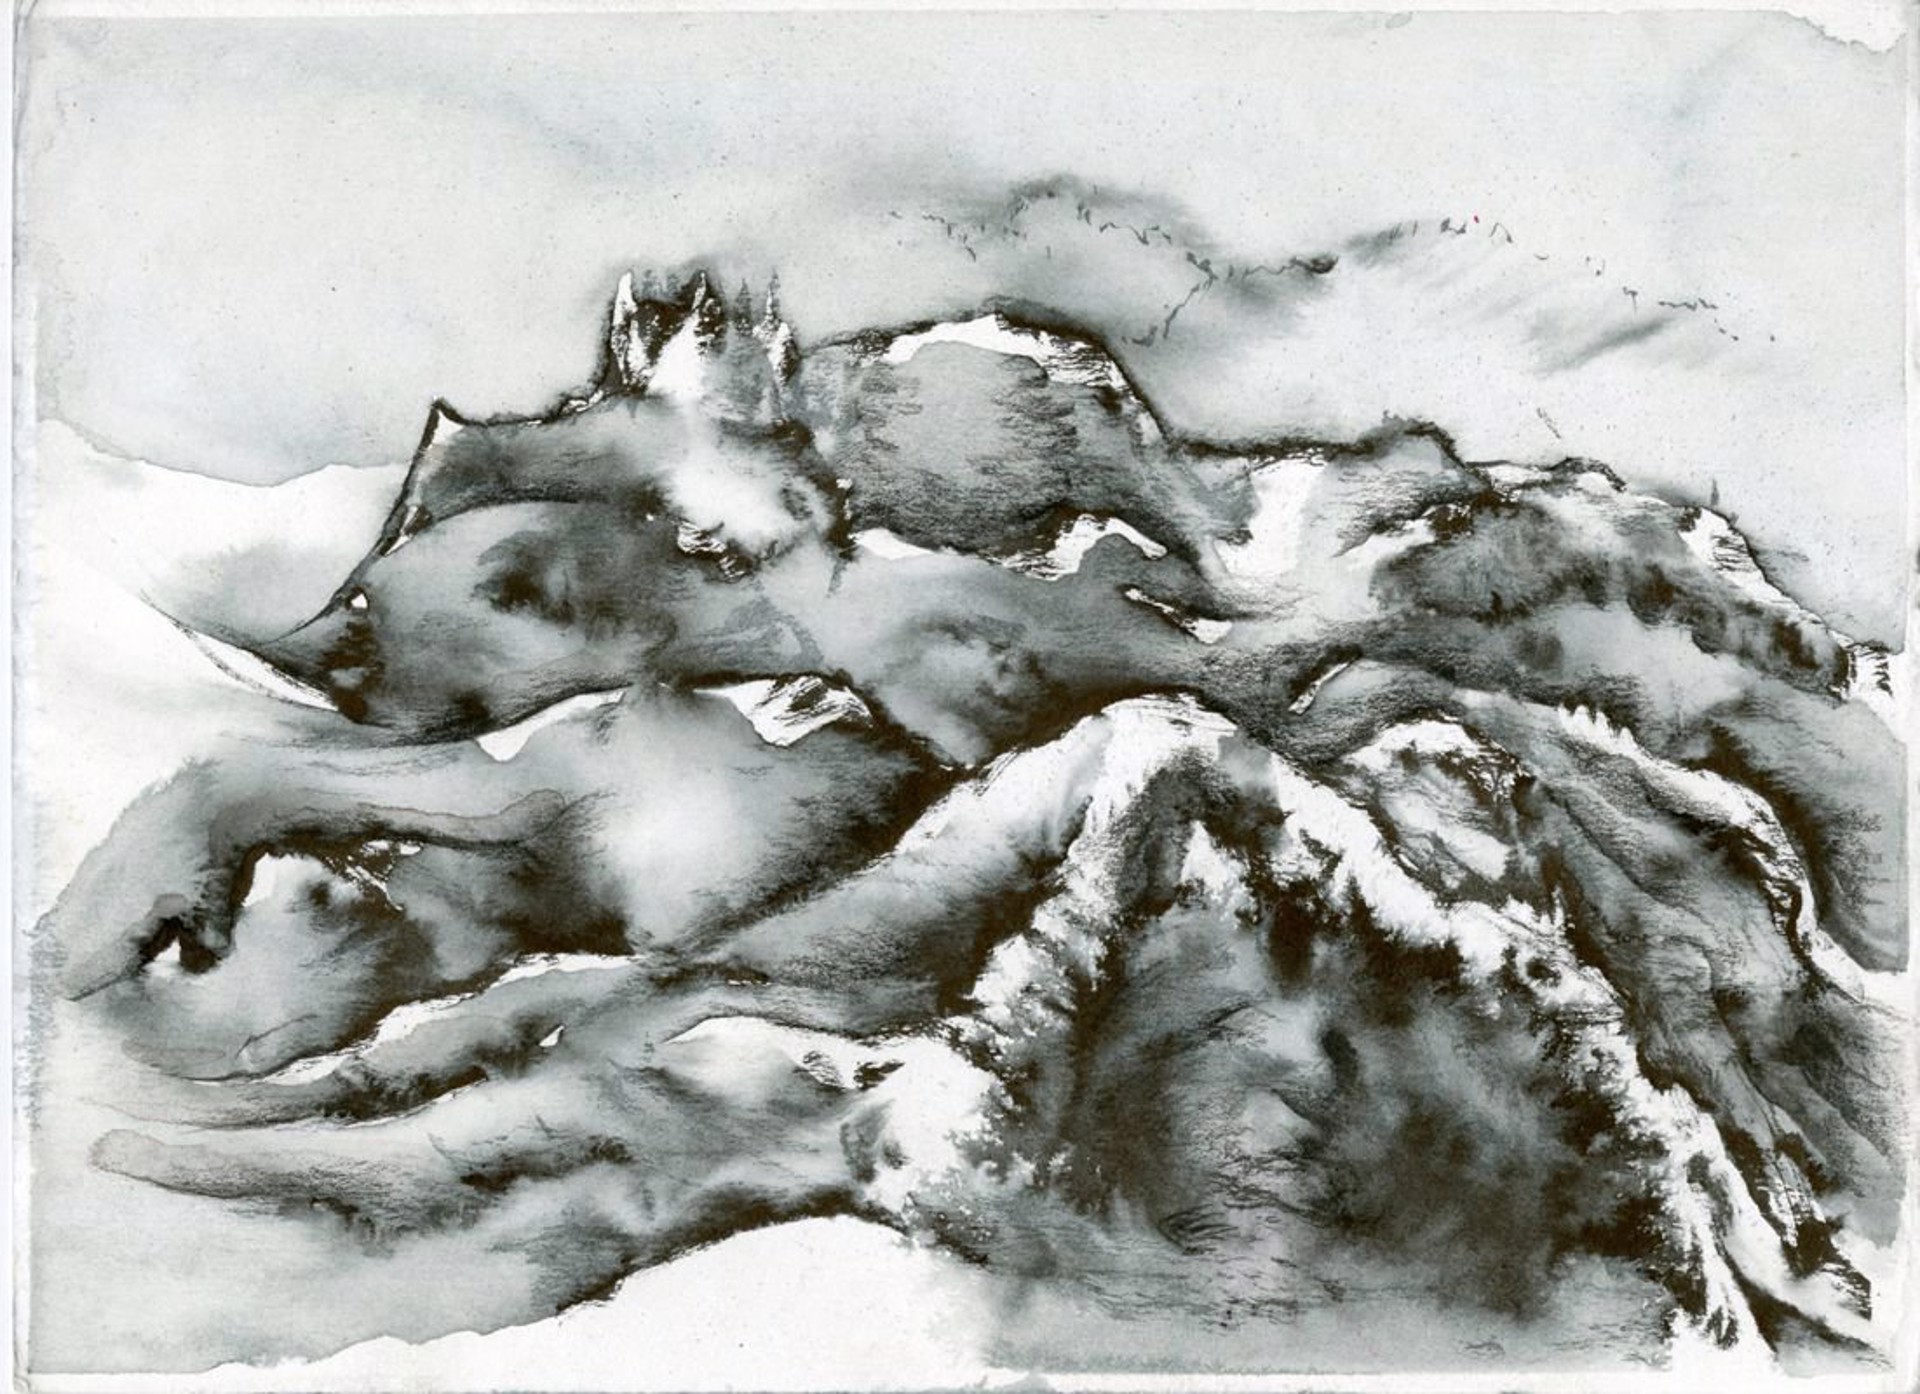 Mountains Coterminous by Jim Holyoak